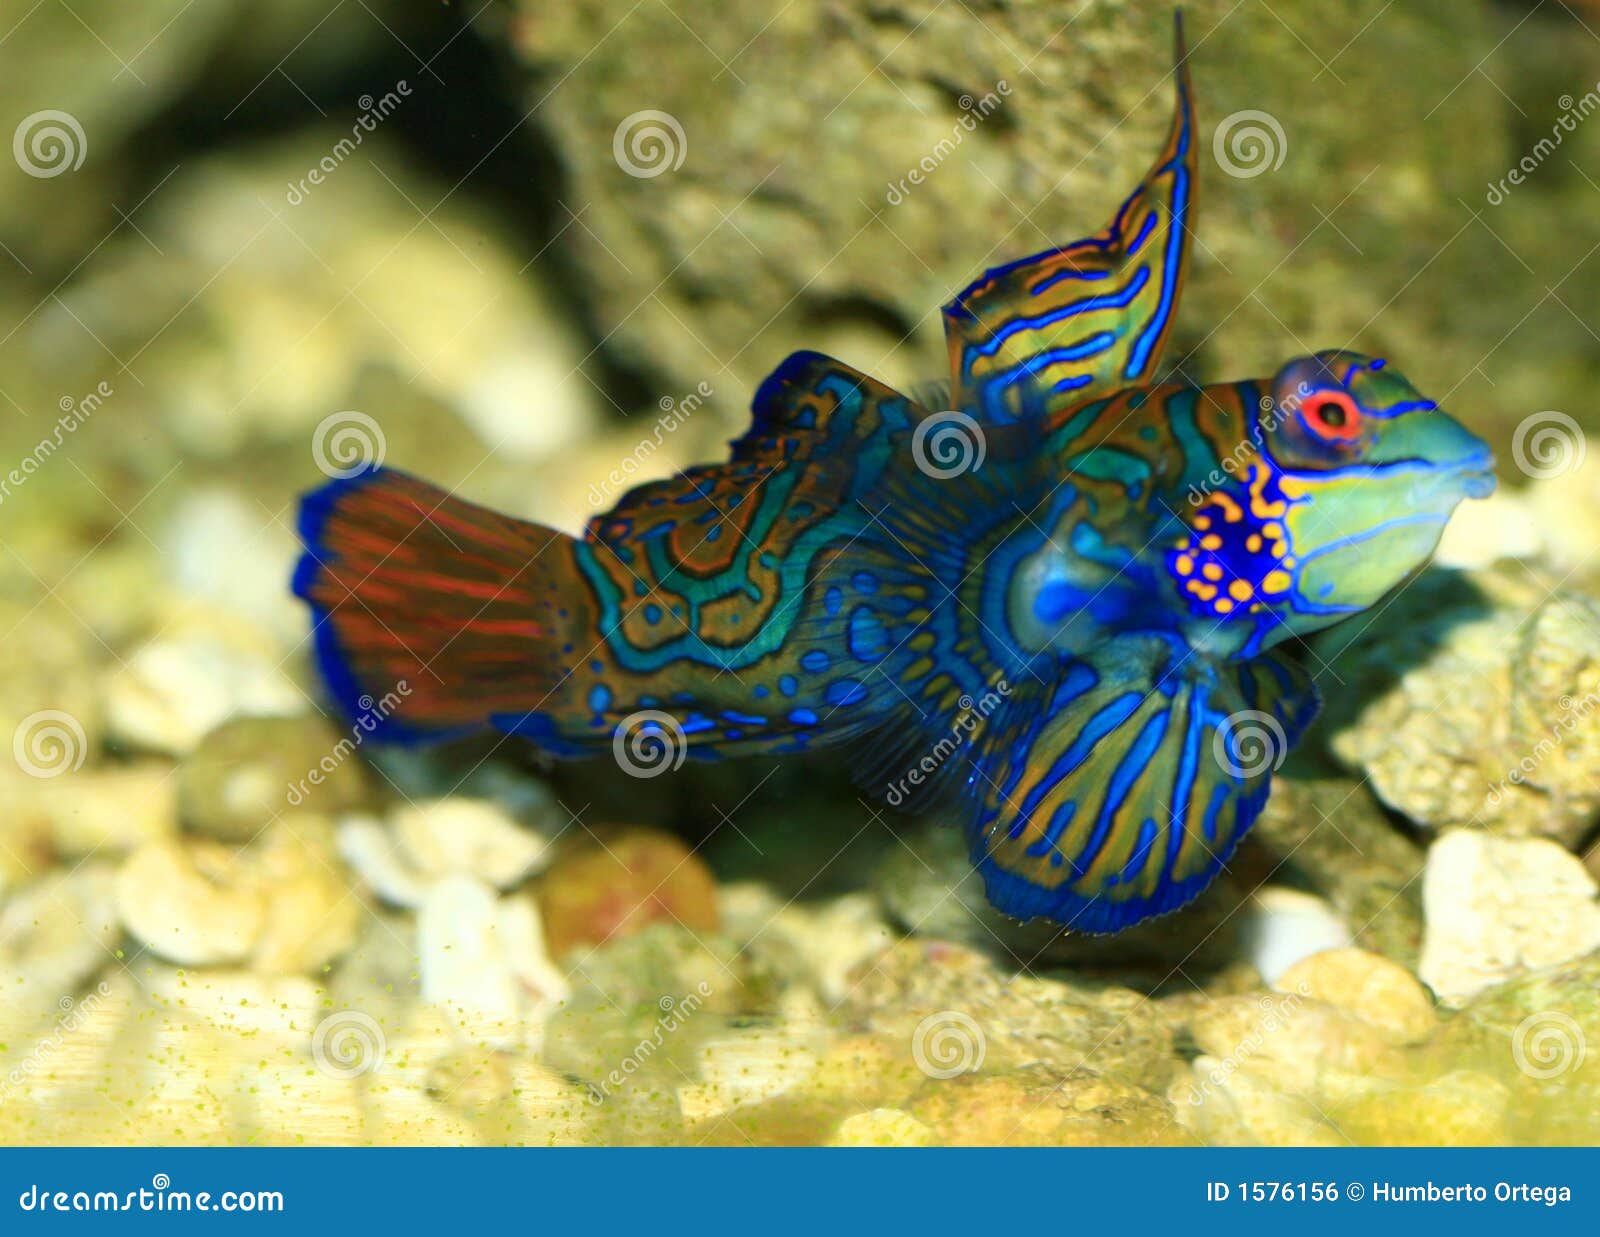 Veranderlijk Civiel resultaat Tropische Vissen stock foto. Image of aquatisch, uniek - 1576156